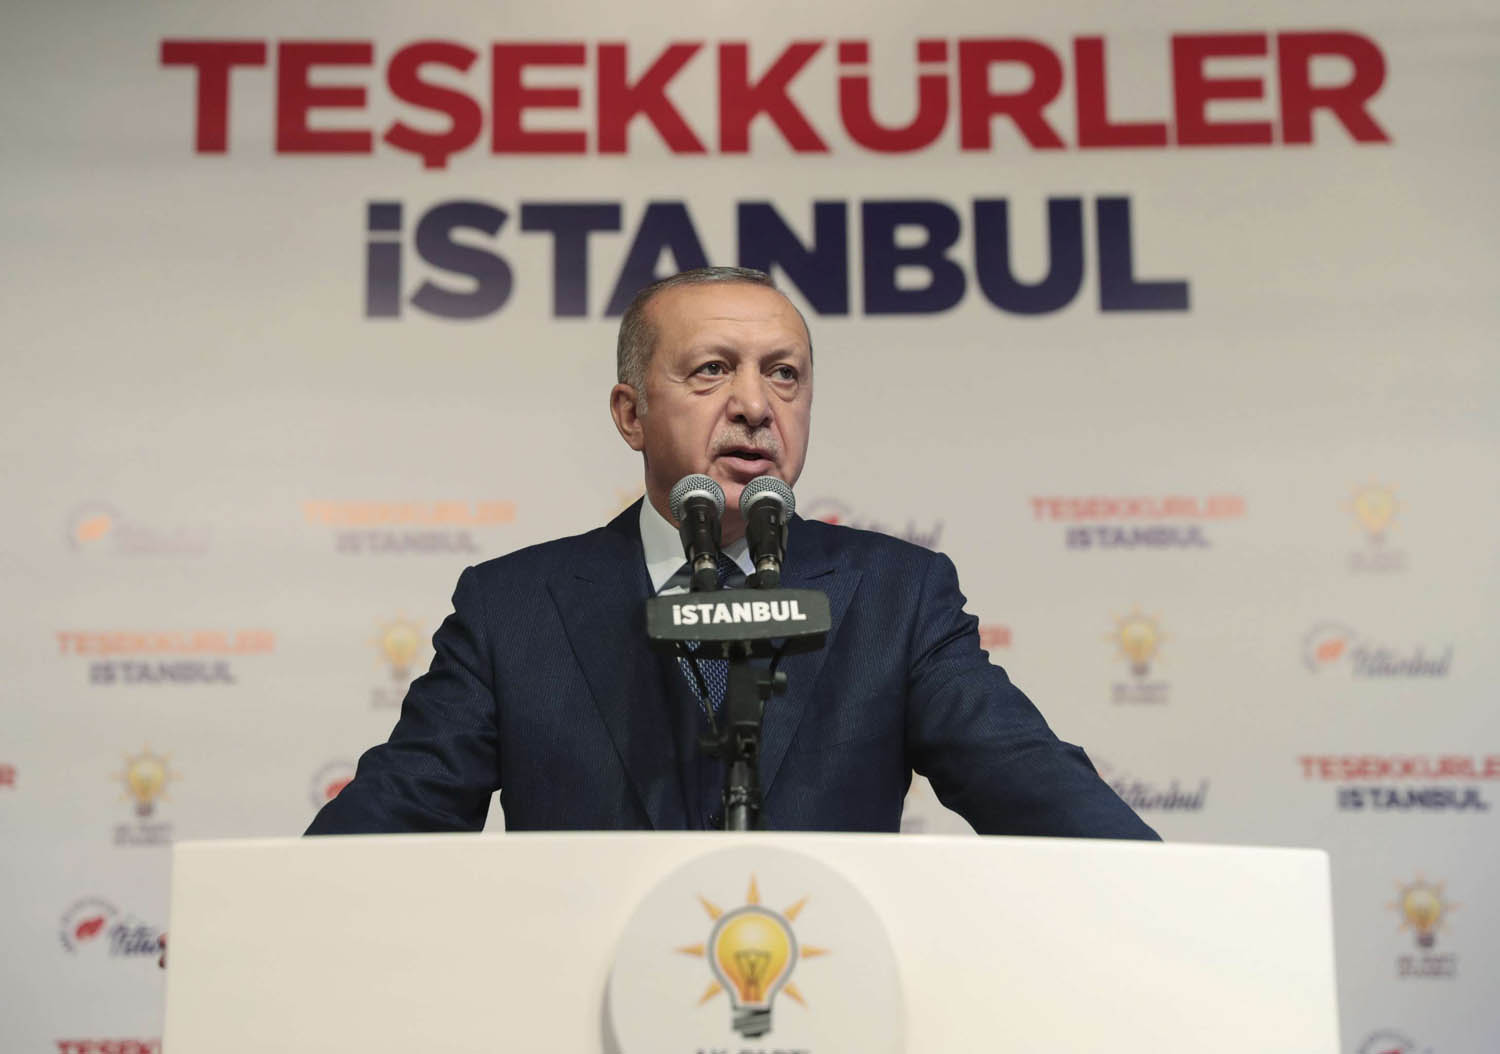 الرئيس التركي رجب طيب أردوغان يتحدث إلى أعضاء حزبه في اسطنبول